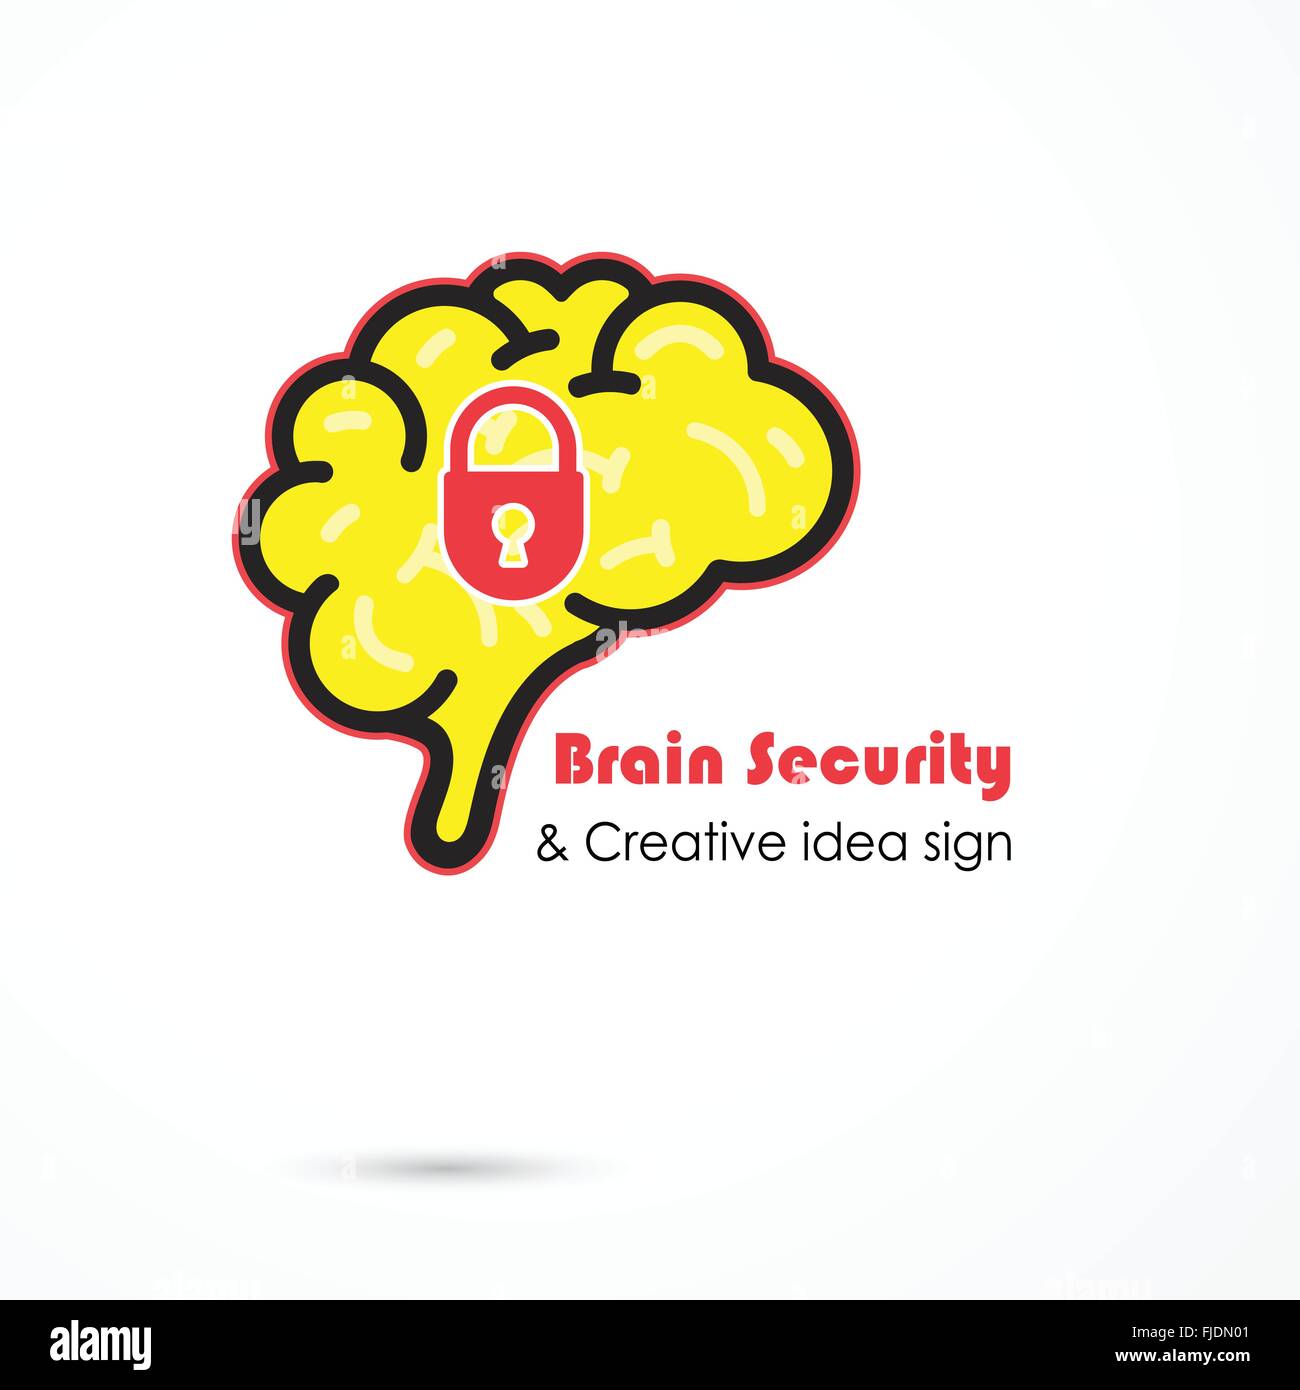 Cerveau créatif résumé de sécurité logo vector modèle. Générer des idées. Logotype de brainstorming icône concept. L'éducation, technologie Illustration de Vecteur